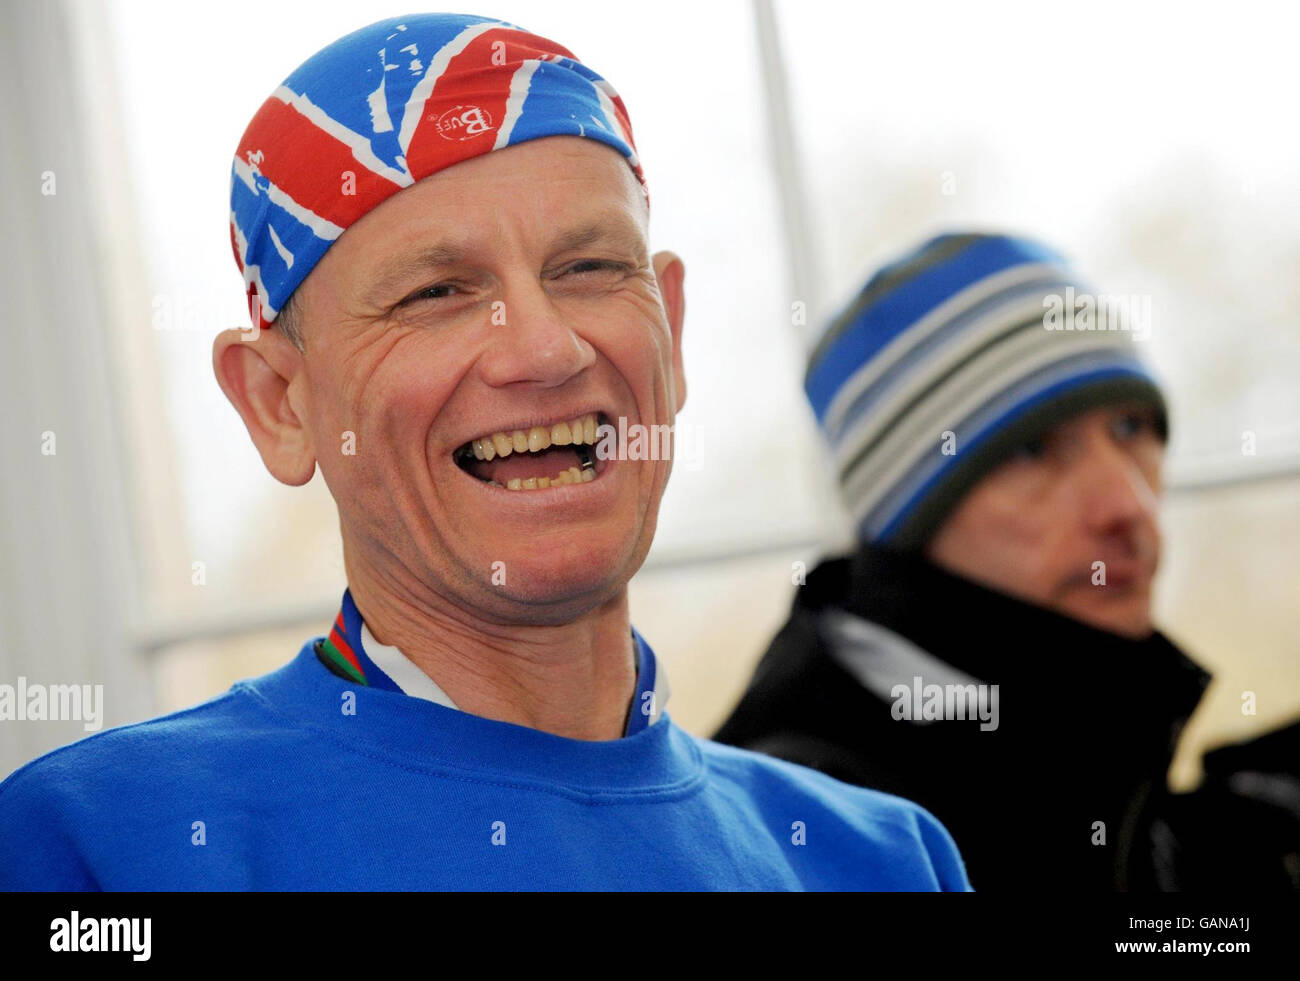 Dave Heeley, coureur aveugle, 50 ans, a terminé son épique sept marathons en sept jours sur sept continents après avoir terminé le Marathon de Londres 2008.Il était accompagné de son guide malcolm Carr (à droite). Banque D'Images